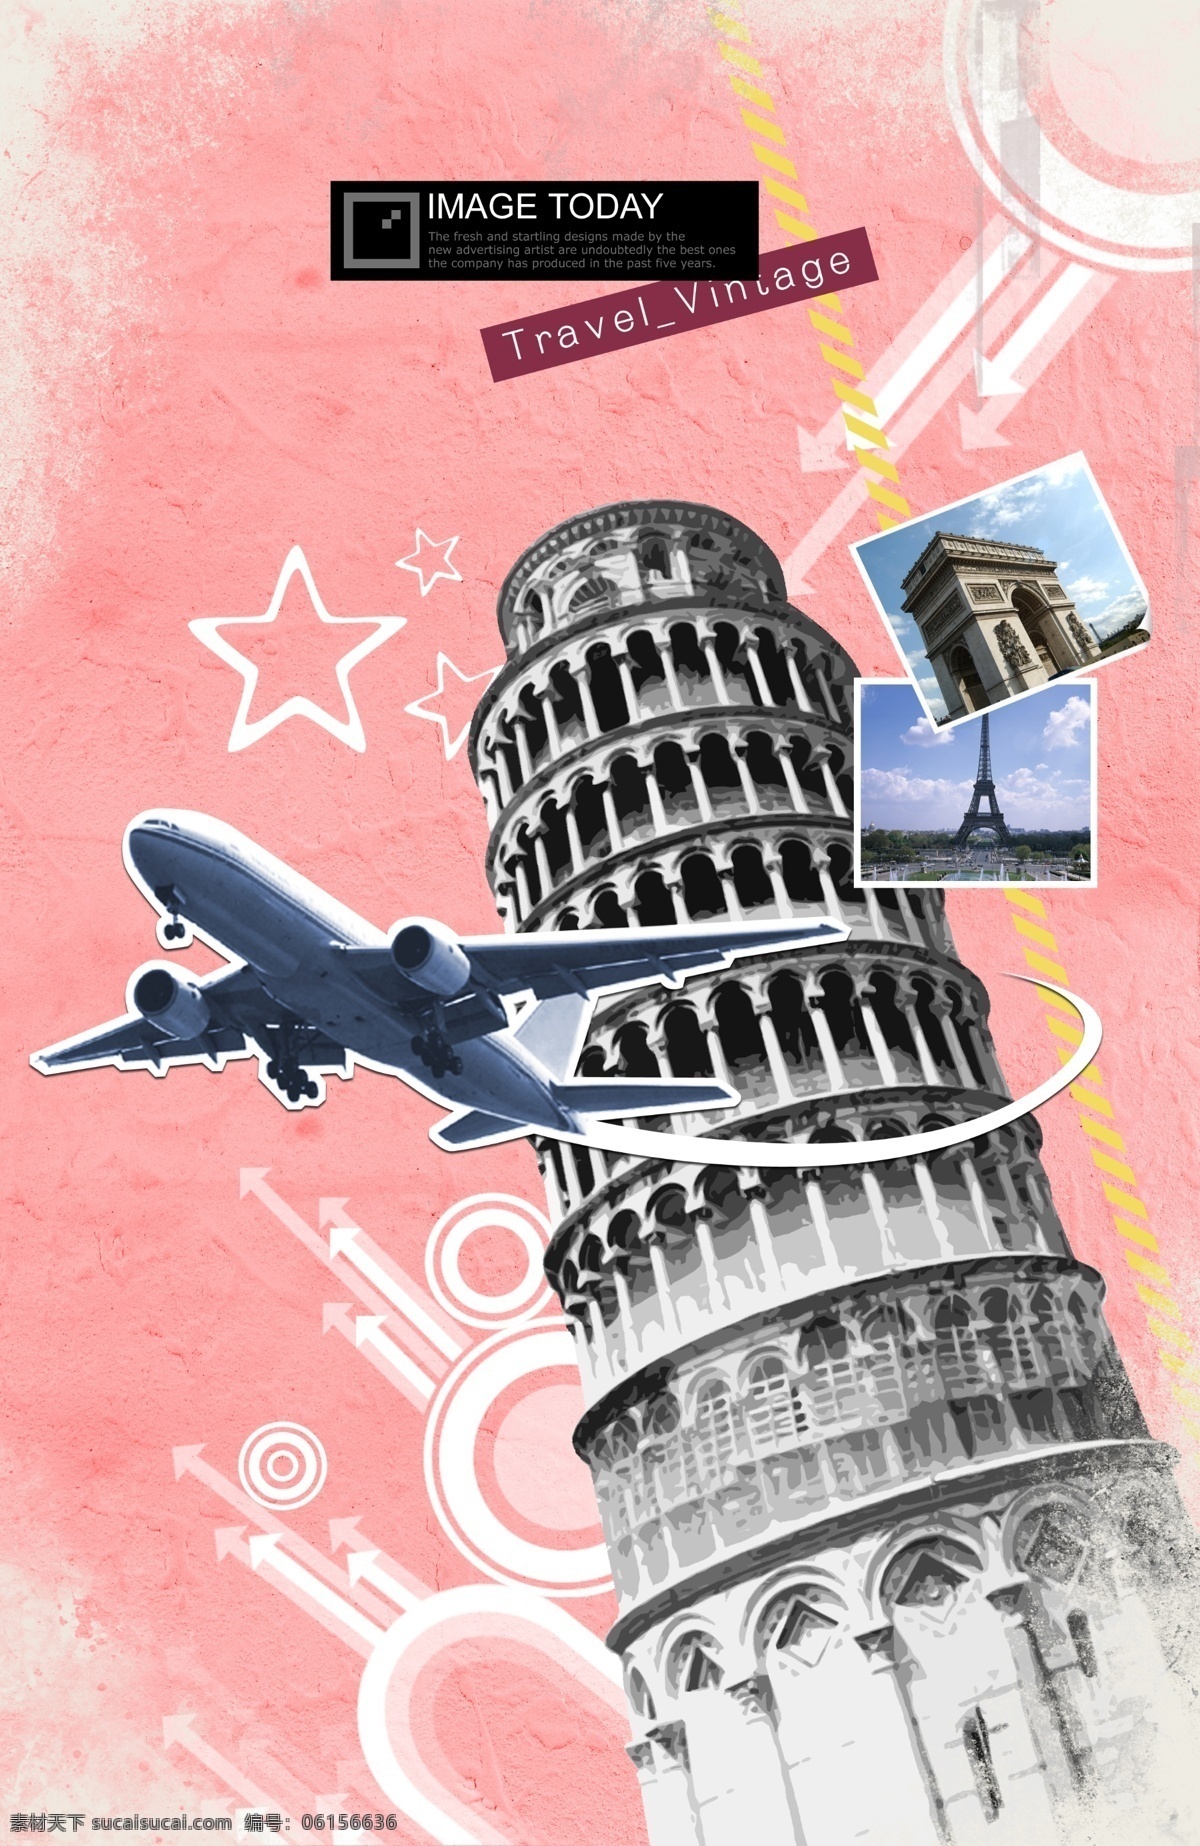 意大利 旅行 元素 时尚 时尚元素 旅游 复古元素 时尚复古 比萨斜塔 照片 飞机 建筑雕塑 环境设计 psd素材